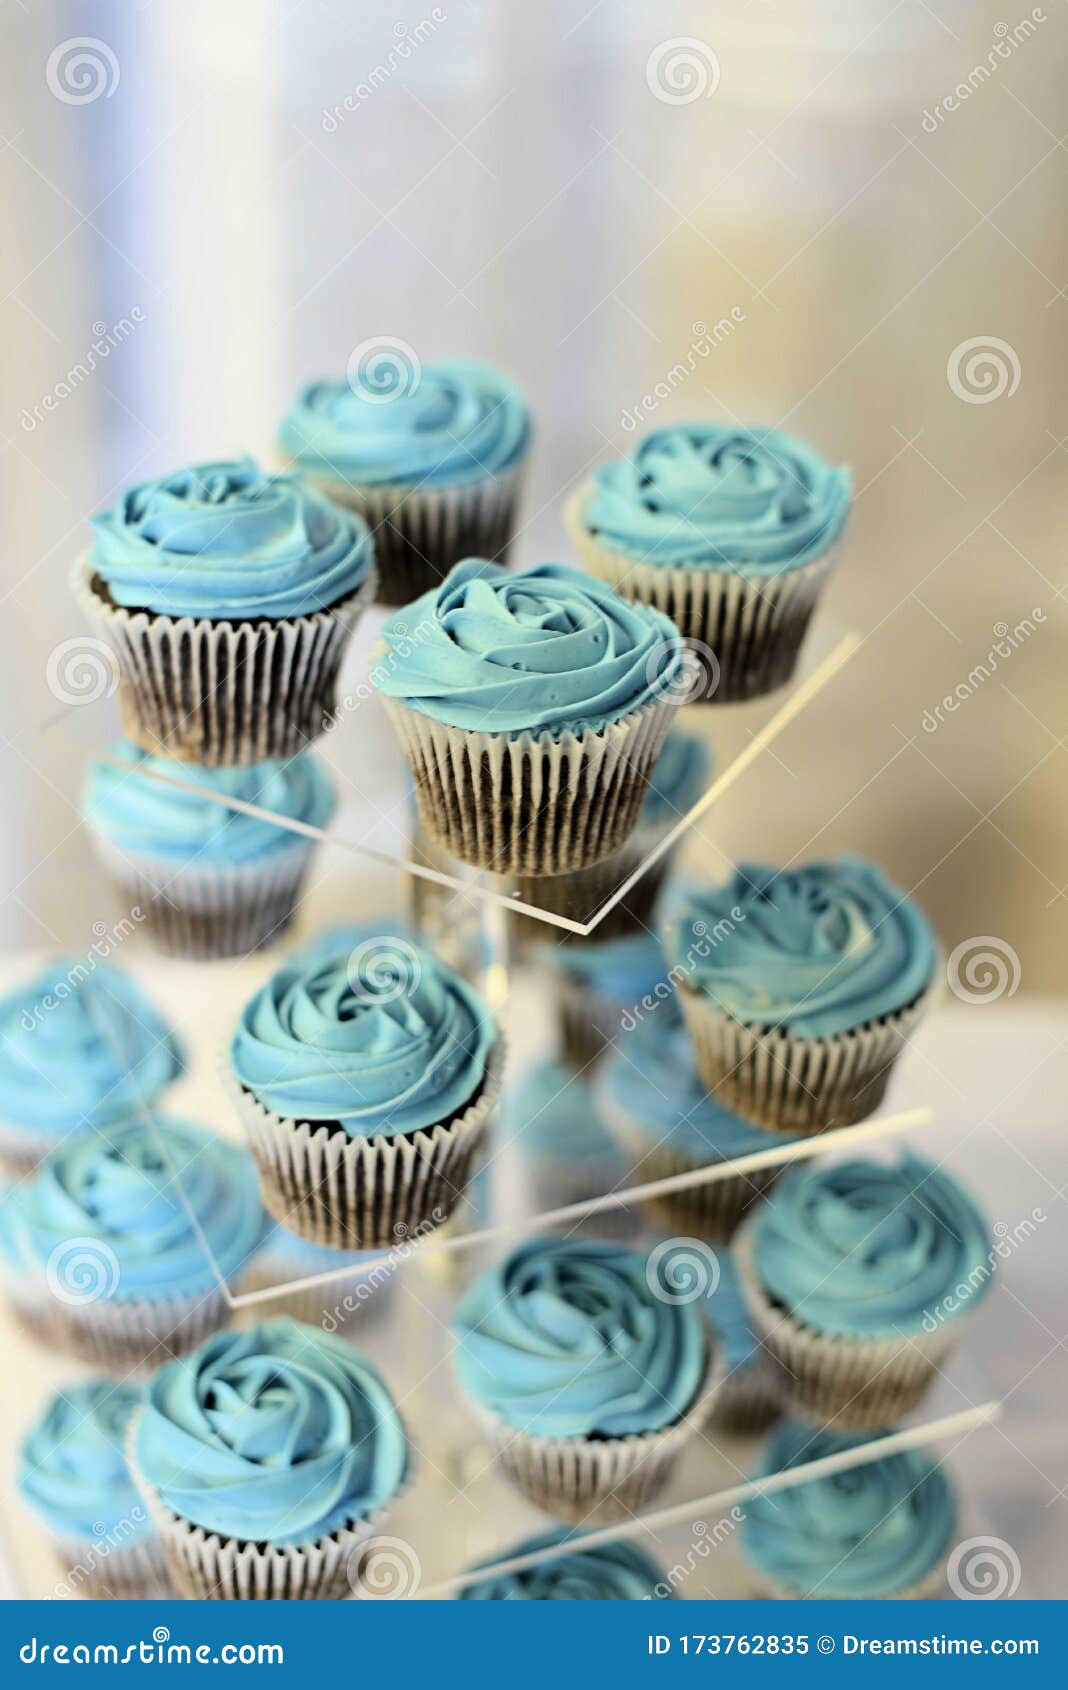 Blue Wedding Cake stock photo. Image of table, celebration - 122605768